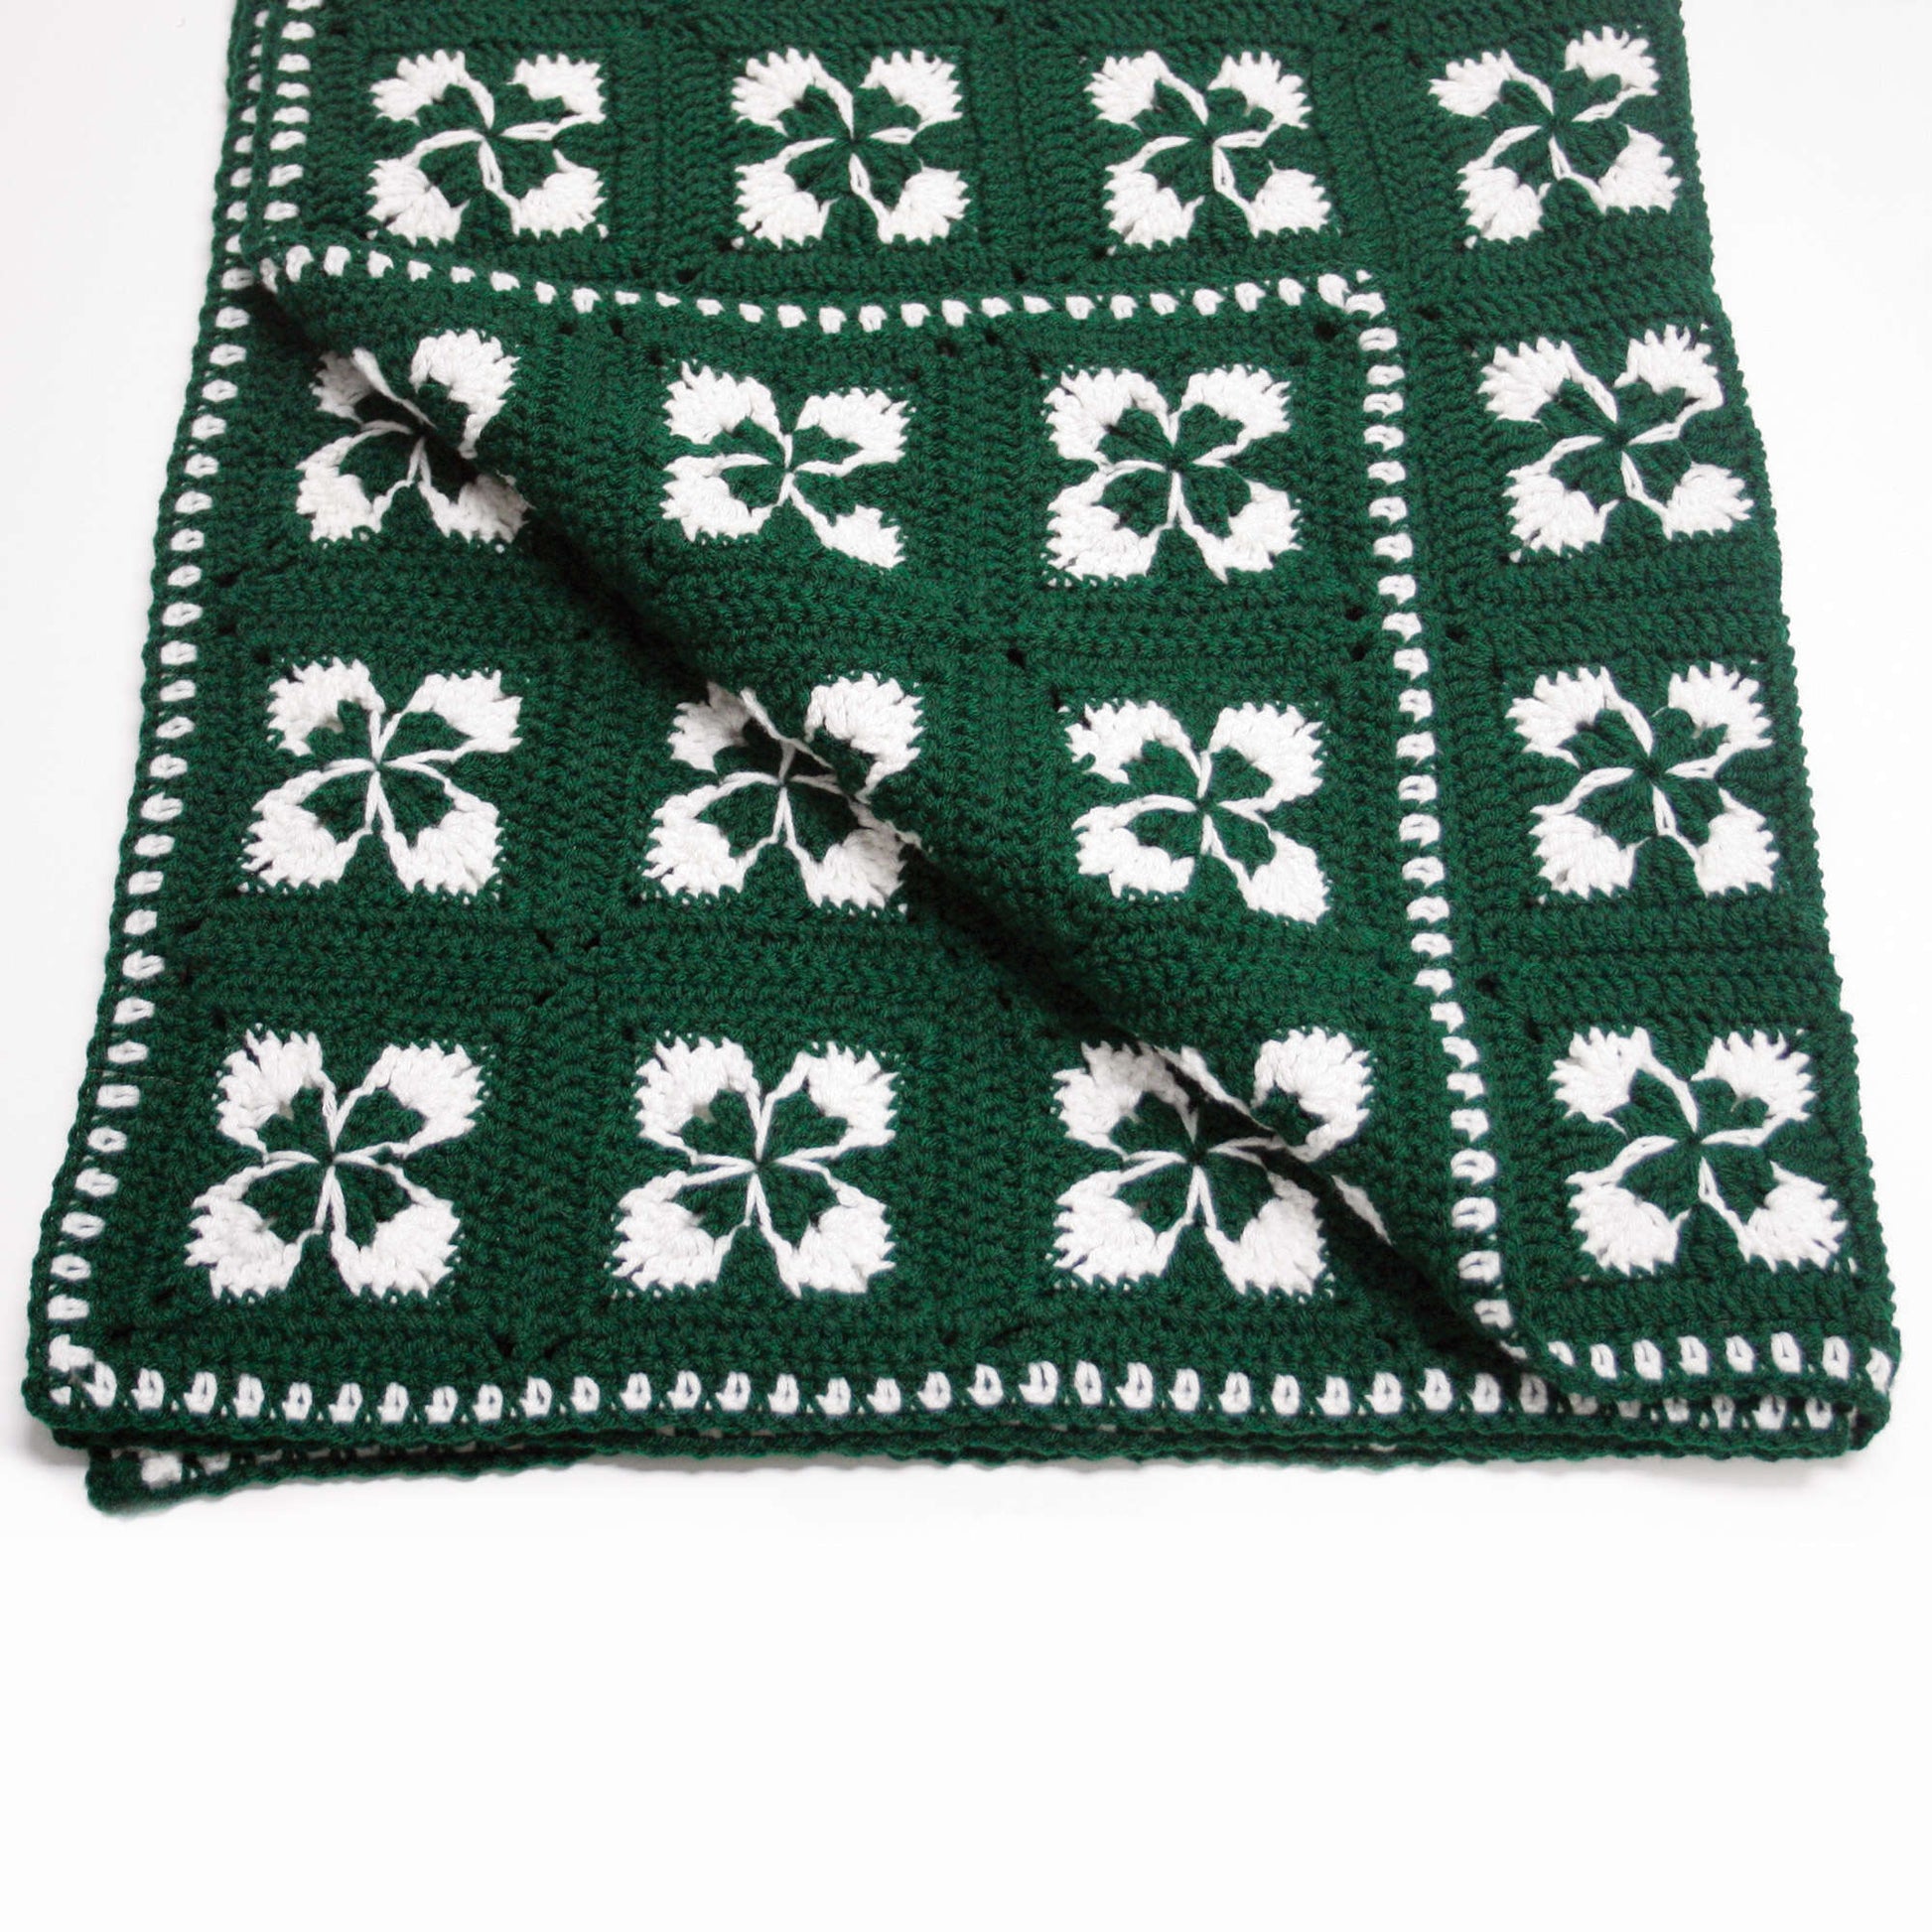 Free Red Heart Crochet Shamrock Afghan Pattern